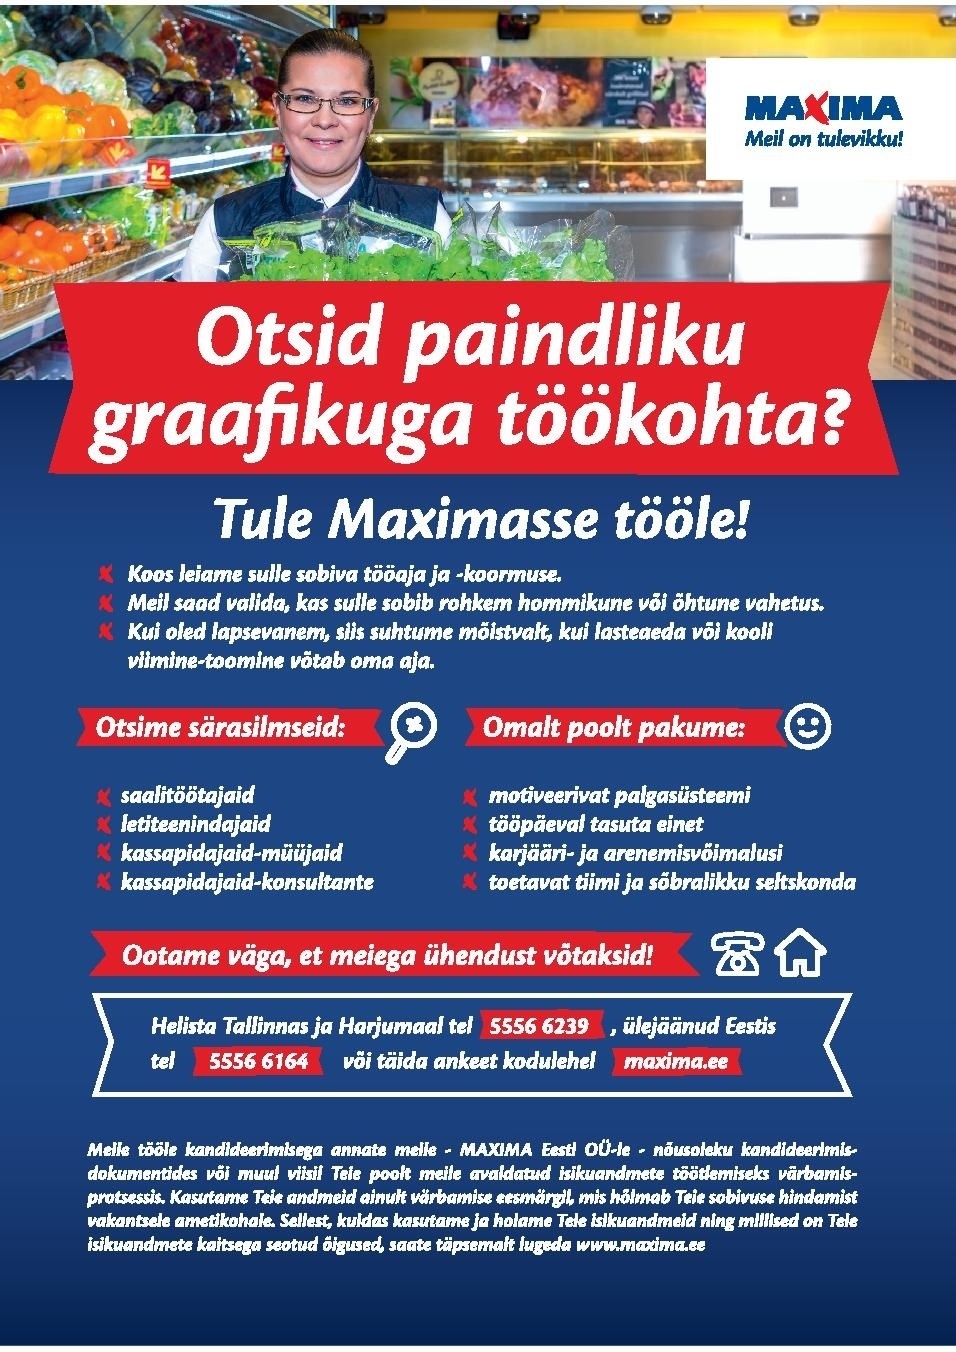 Maxima Eesti OÜ Paindliku graafikuga töö Lasnamäe Maximas